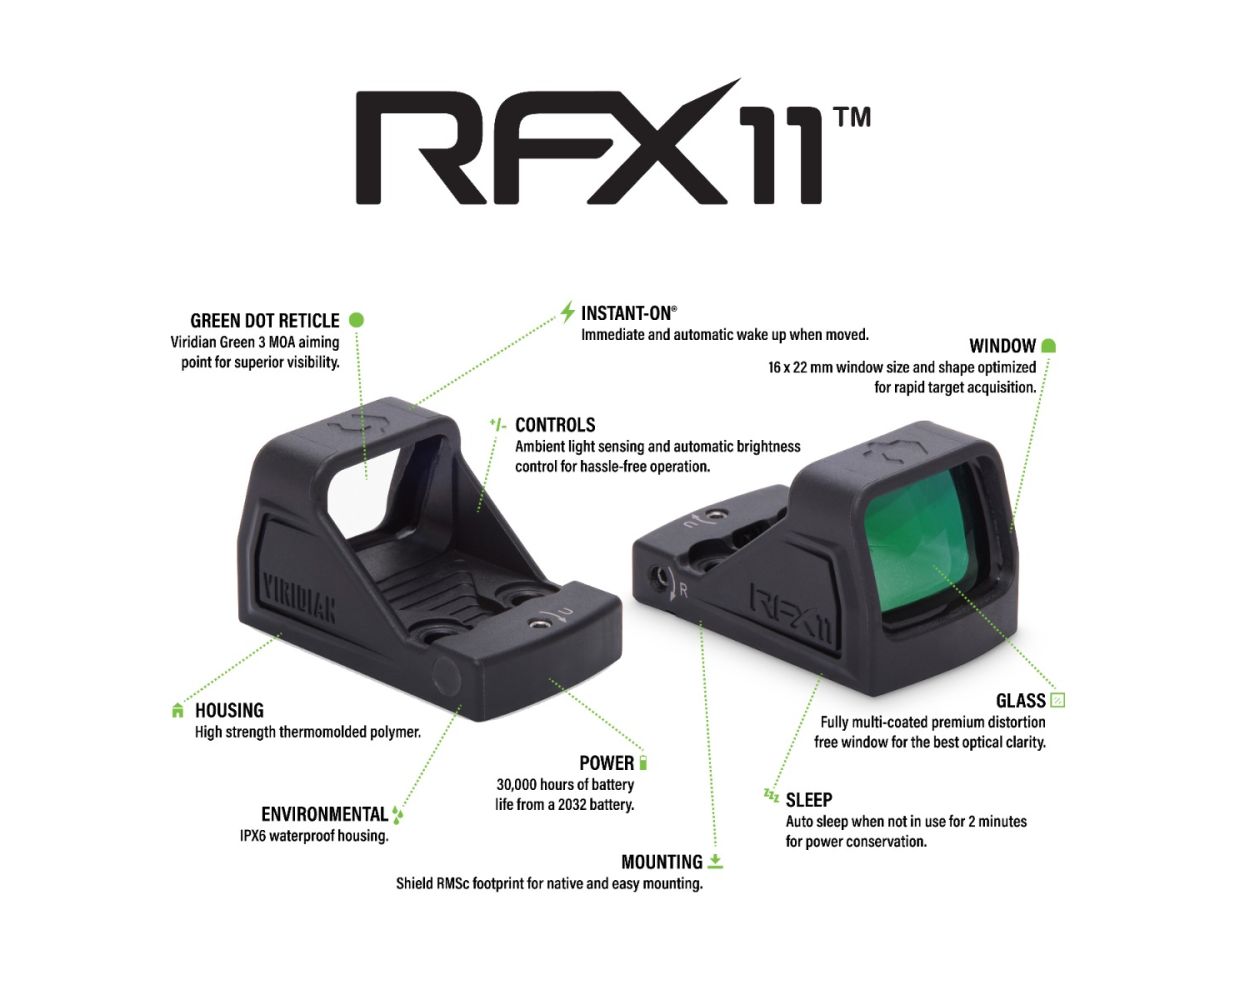 Viridian RFX 11 3 MOA Green Dot Sight - RMSc Footprint - High Strength Polymer Housing